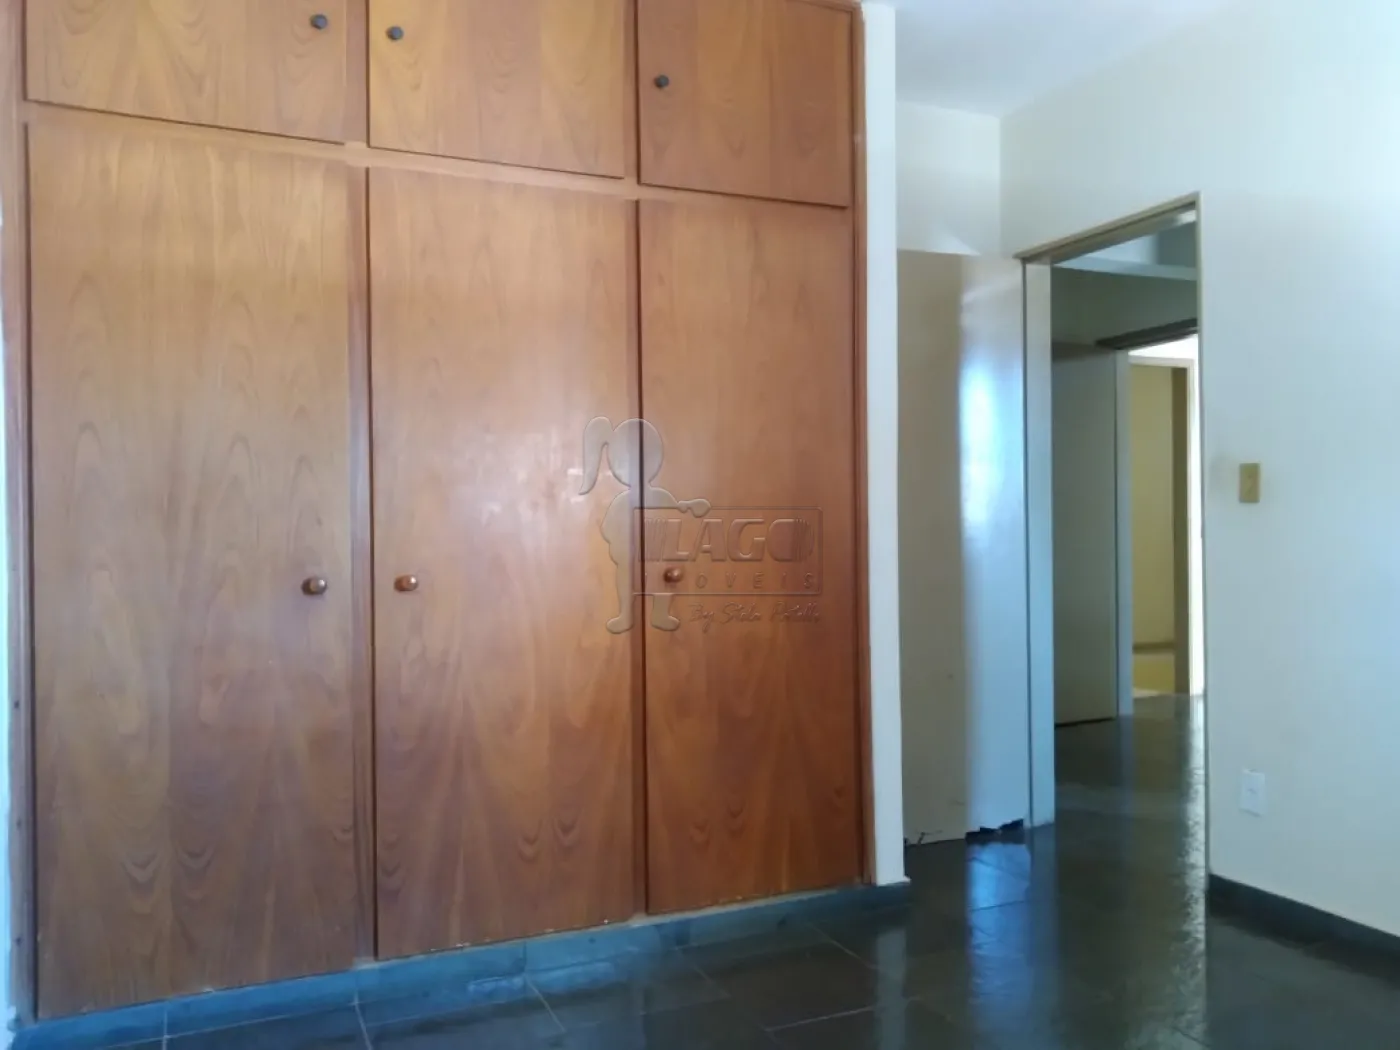 Comprar Apartamentos / Padrão em Ribeirão Preto R$ 225.000,00 - Foto 5